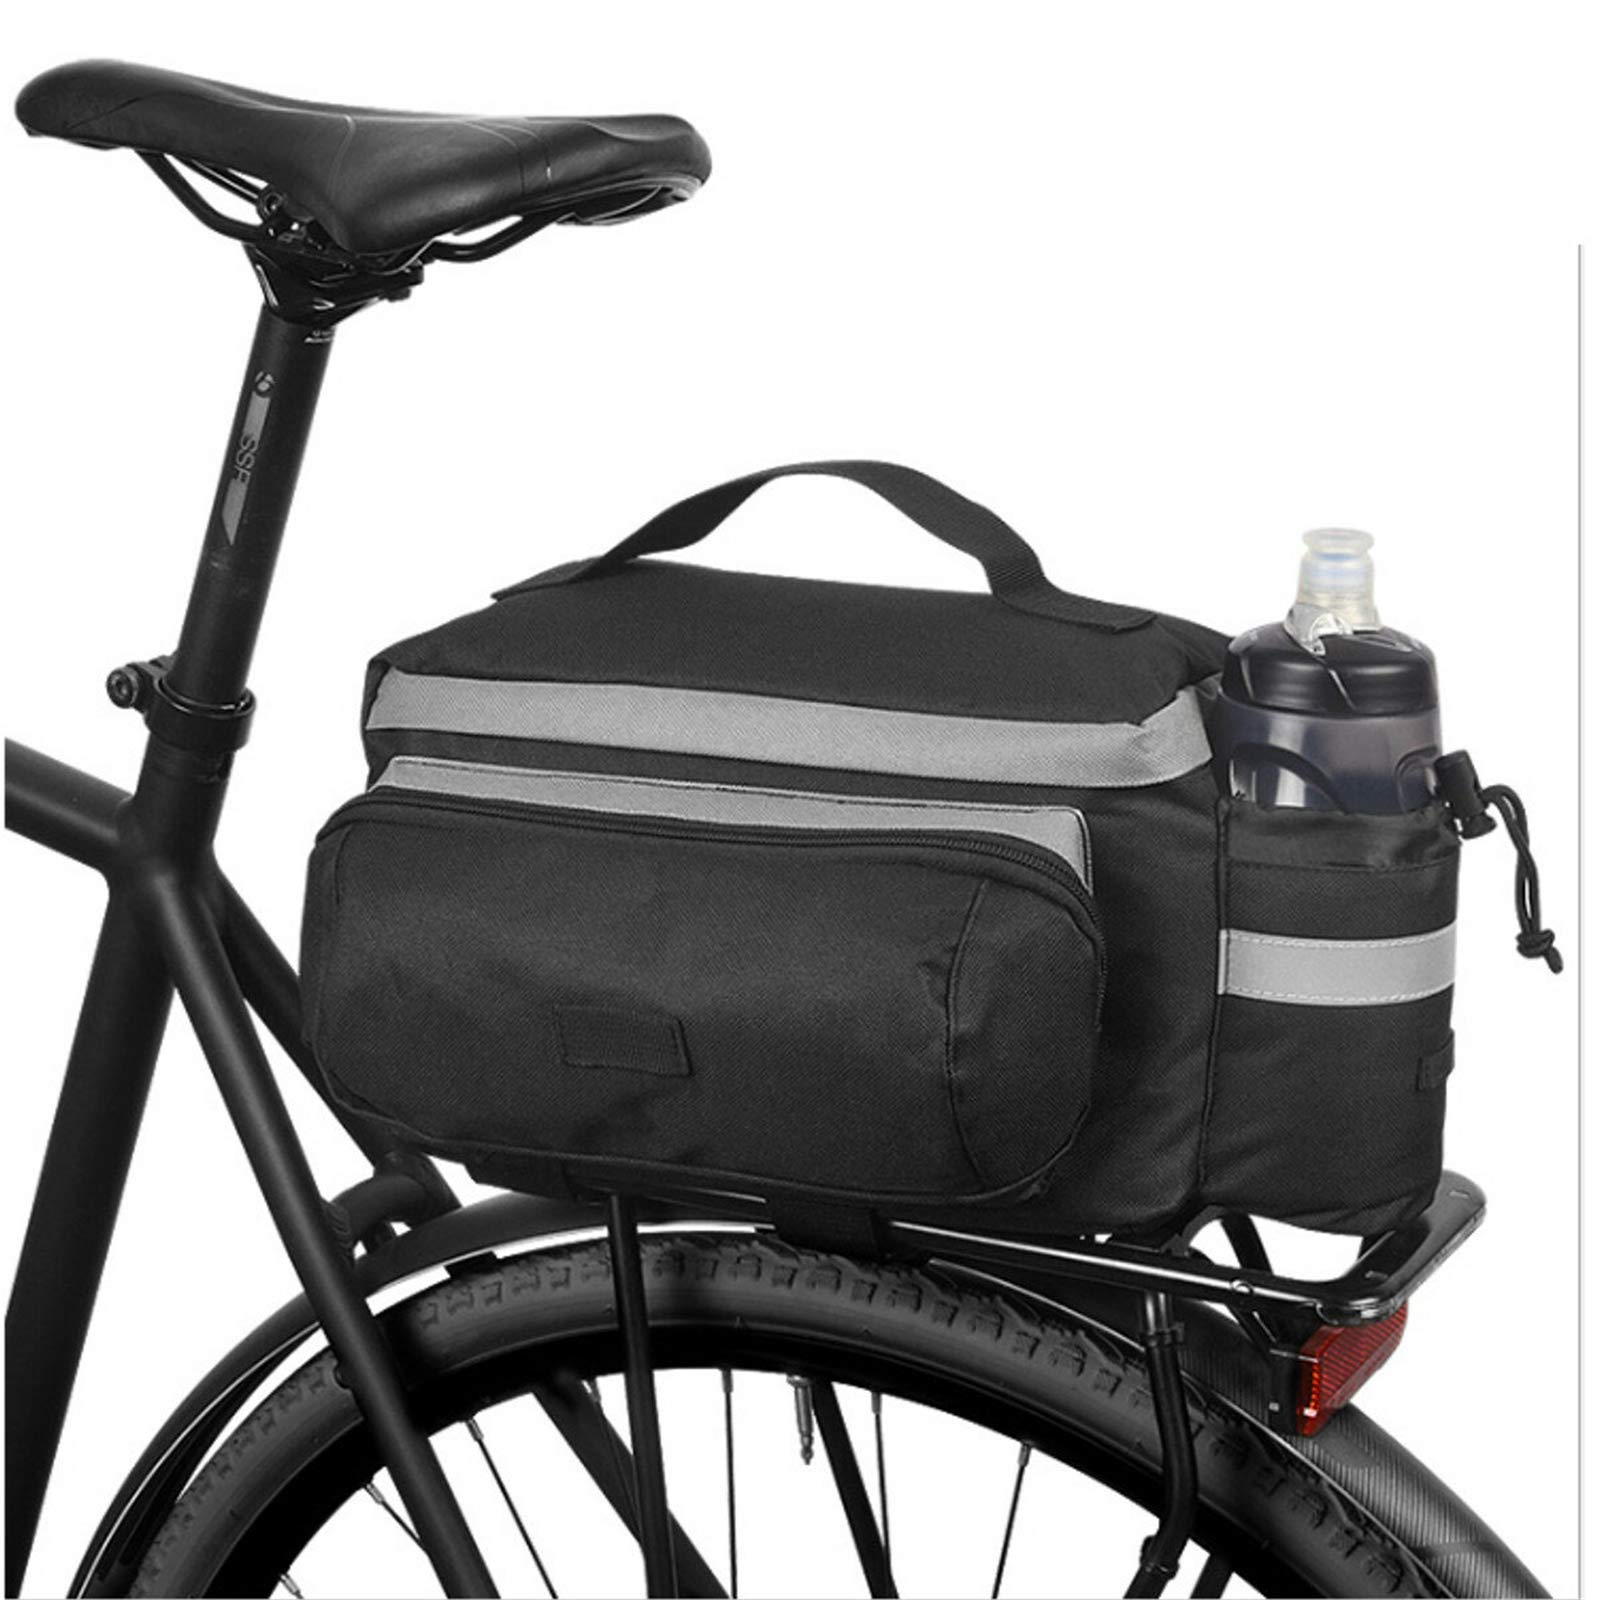 MUARE Fahrradsatteltasche, große Kapazität, Fahrradtasche mit Handgurt, Gepäckträger, Korb, Mountainbike, Rennrad, Sattel, Handtasche, Gepäcktasche, Hecktasche für MTB, Rennrad, Faltrad von MUARE